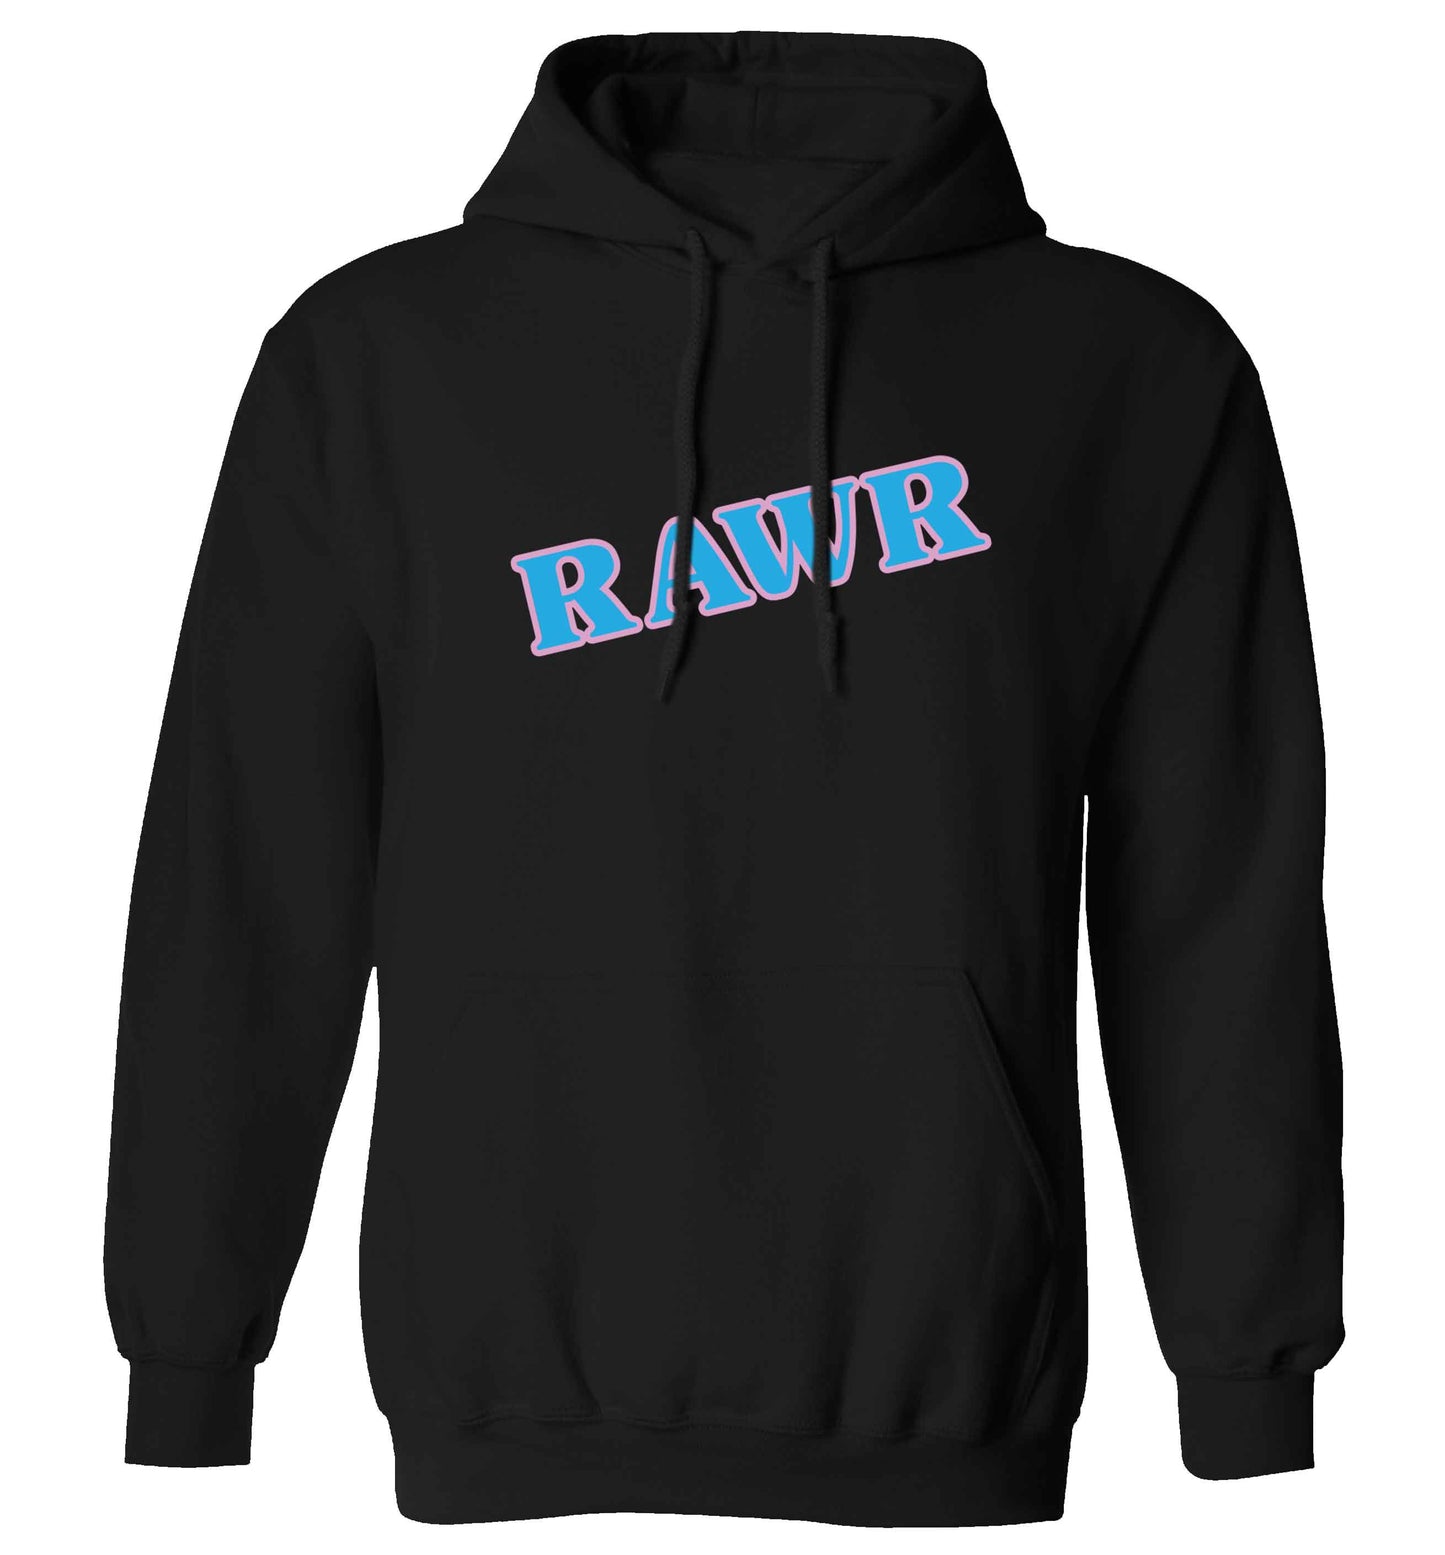 Rawr adults unisex black hoodie 2XL